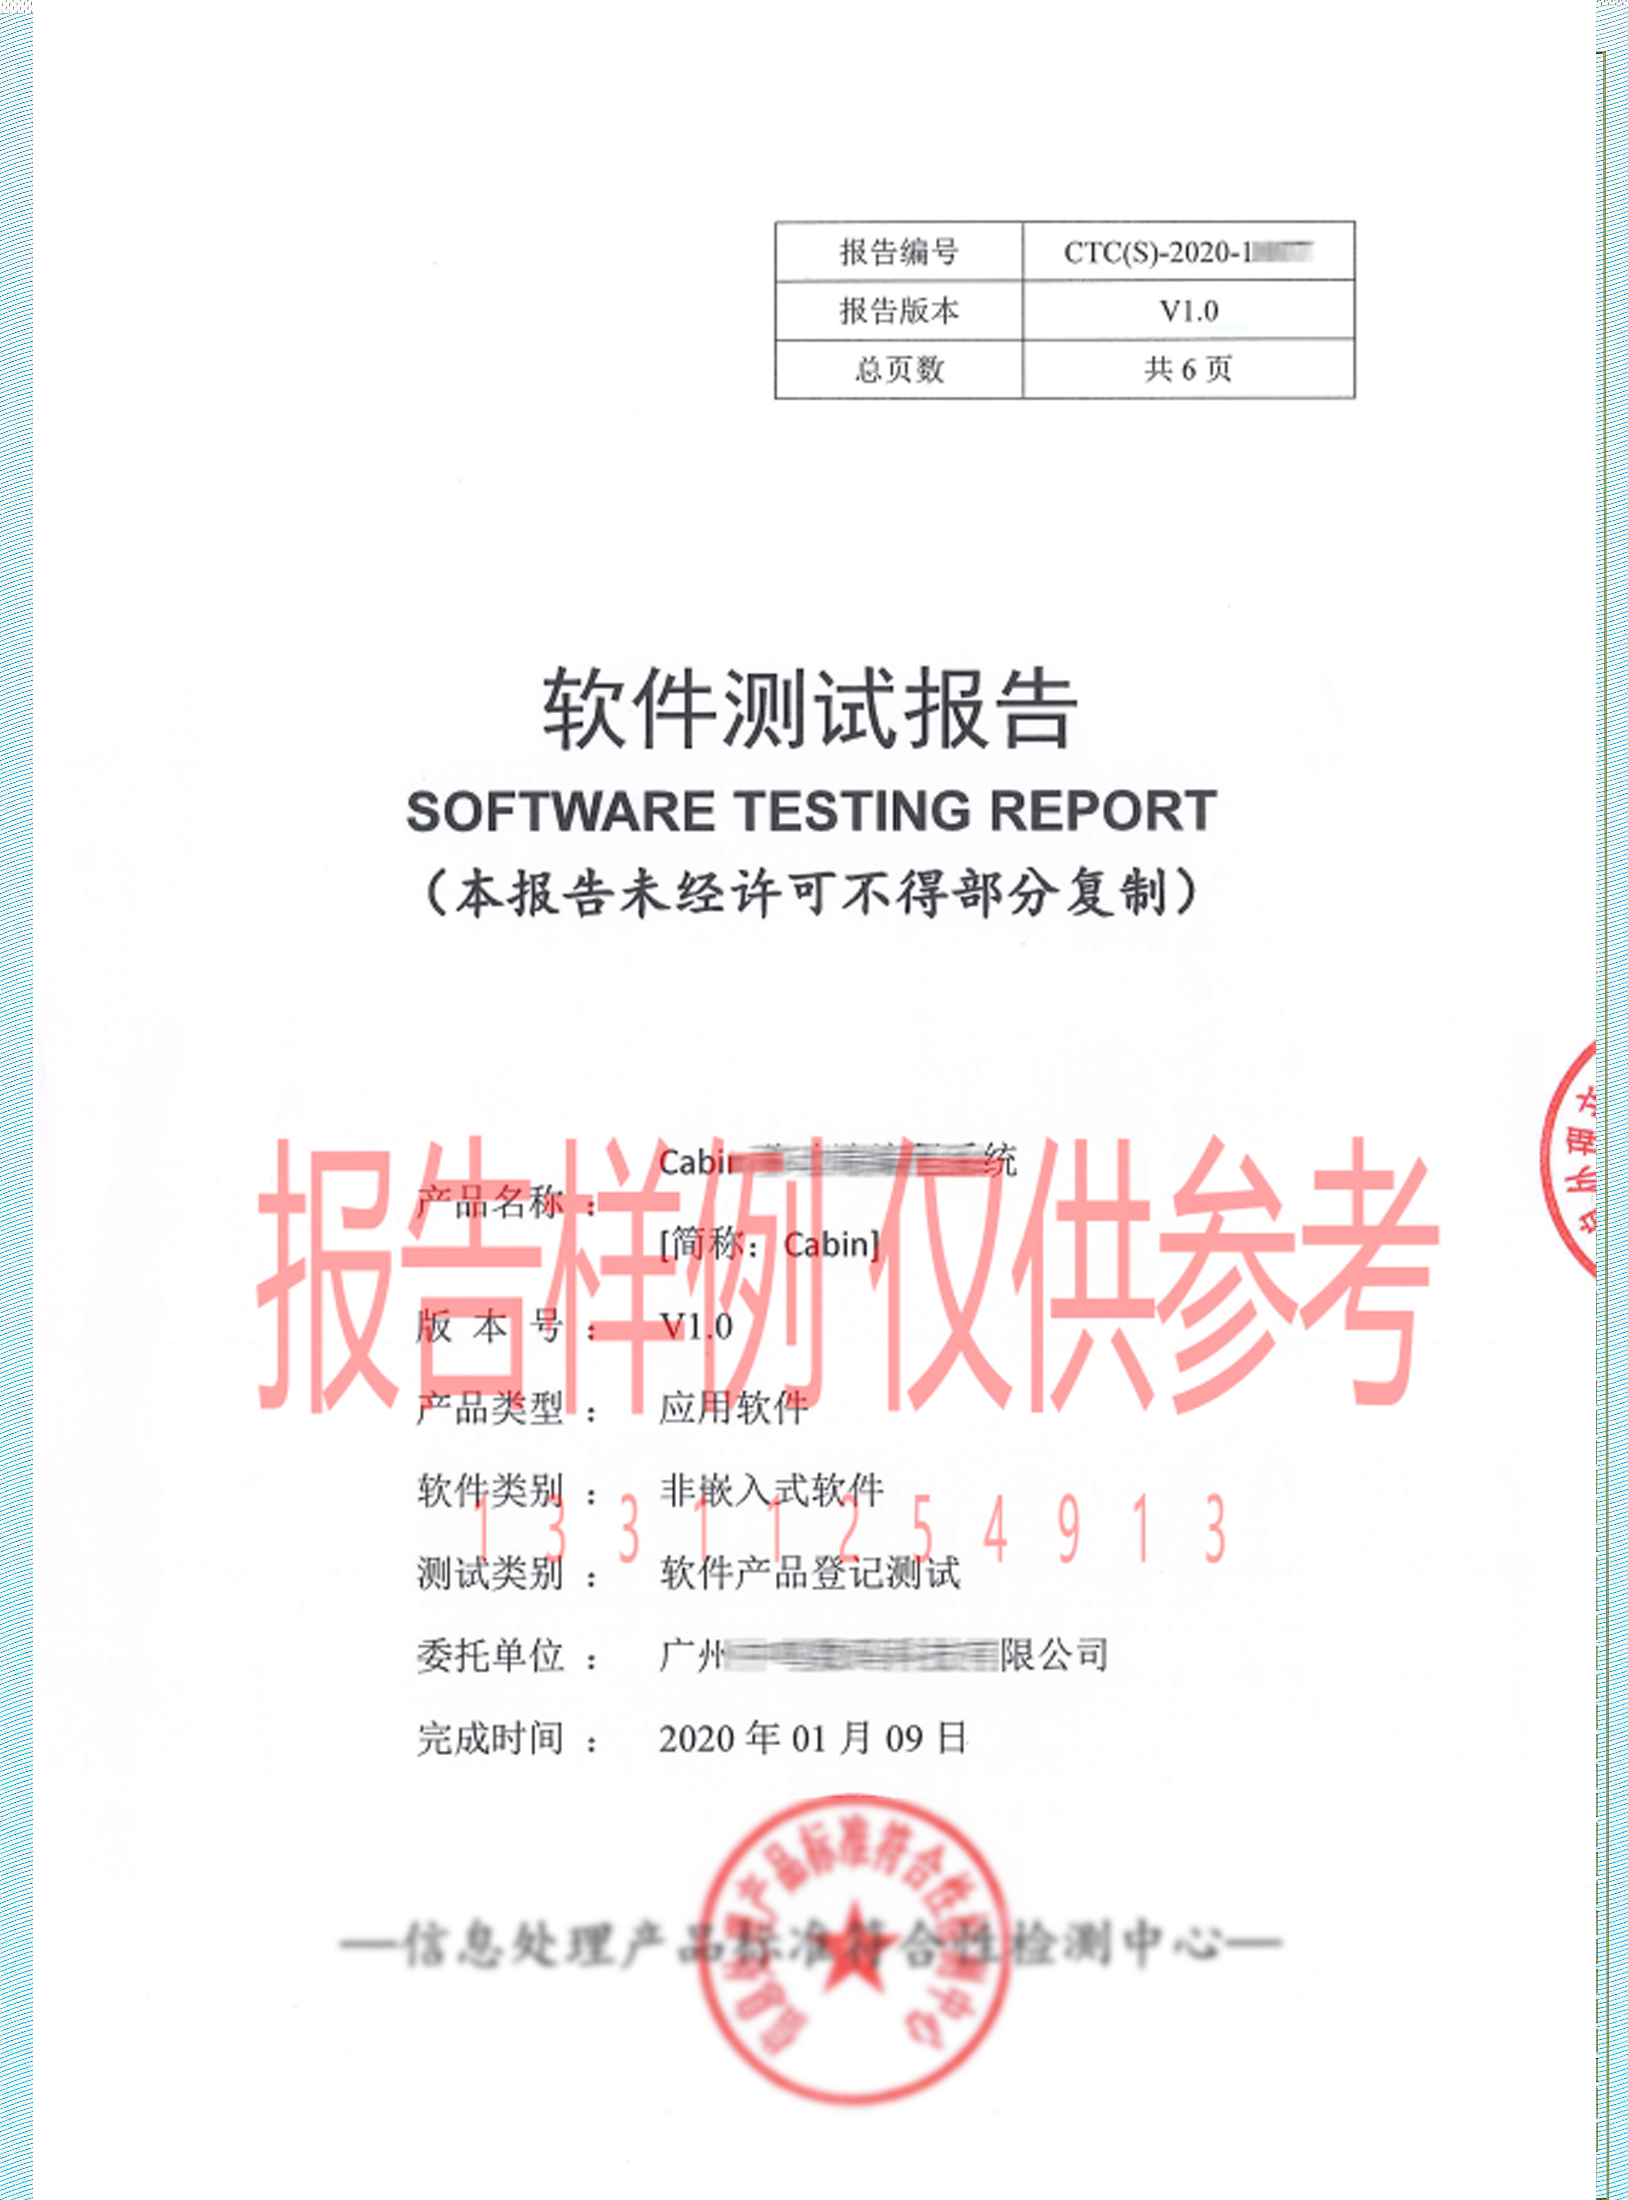 厦门软件登记测试 软件登记测试报告 一站式服务